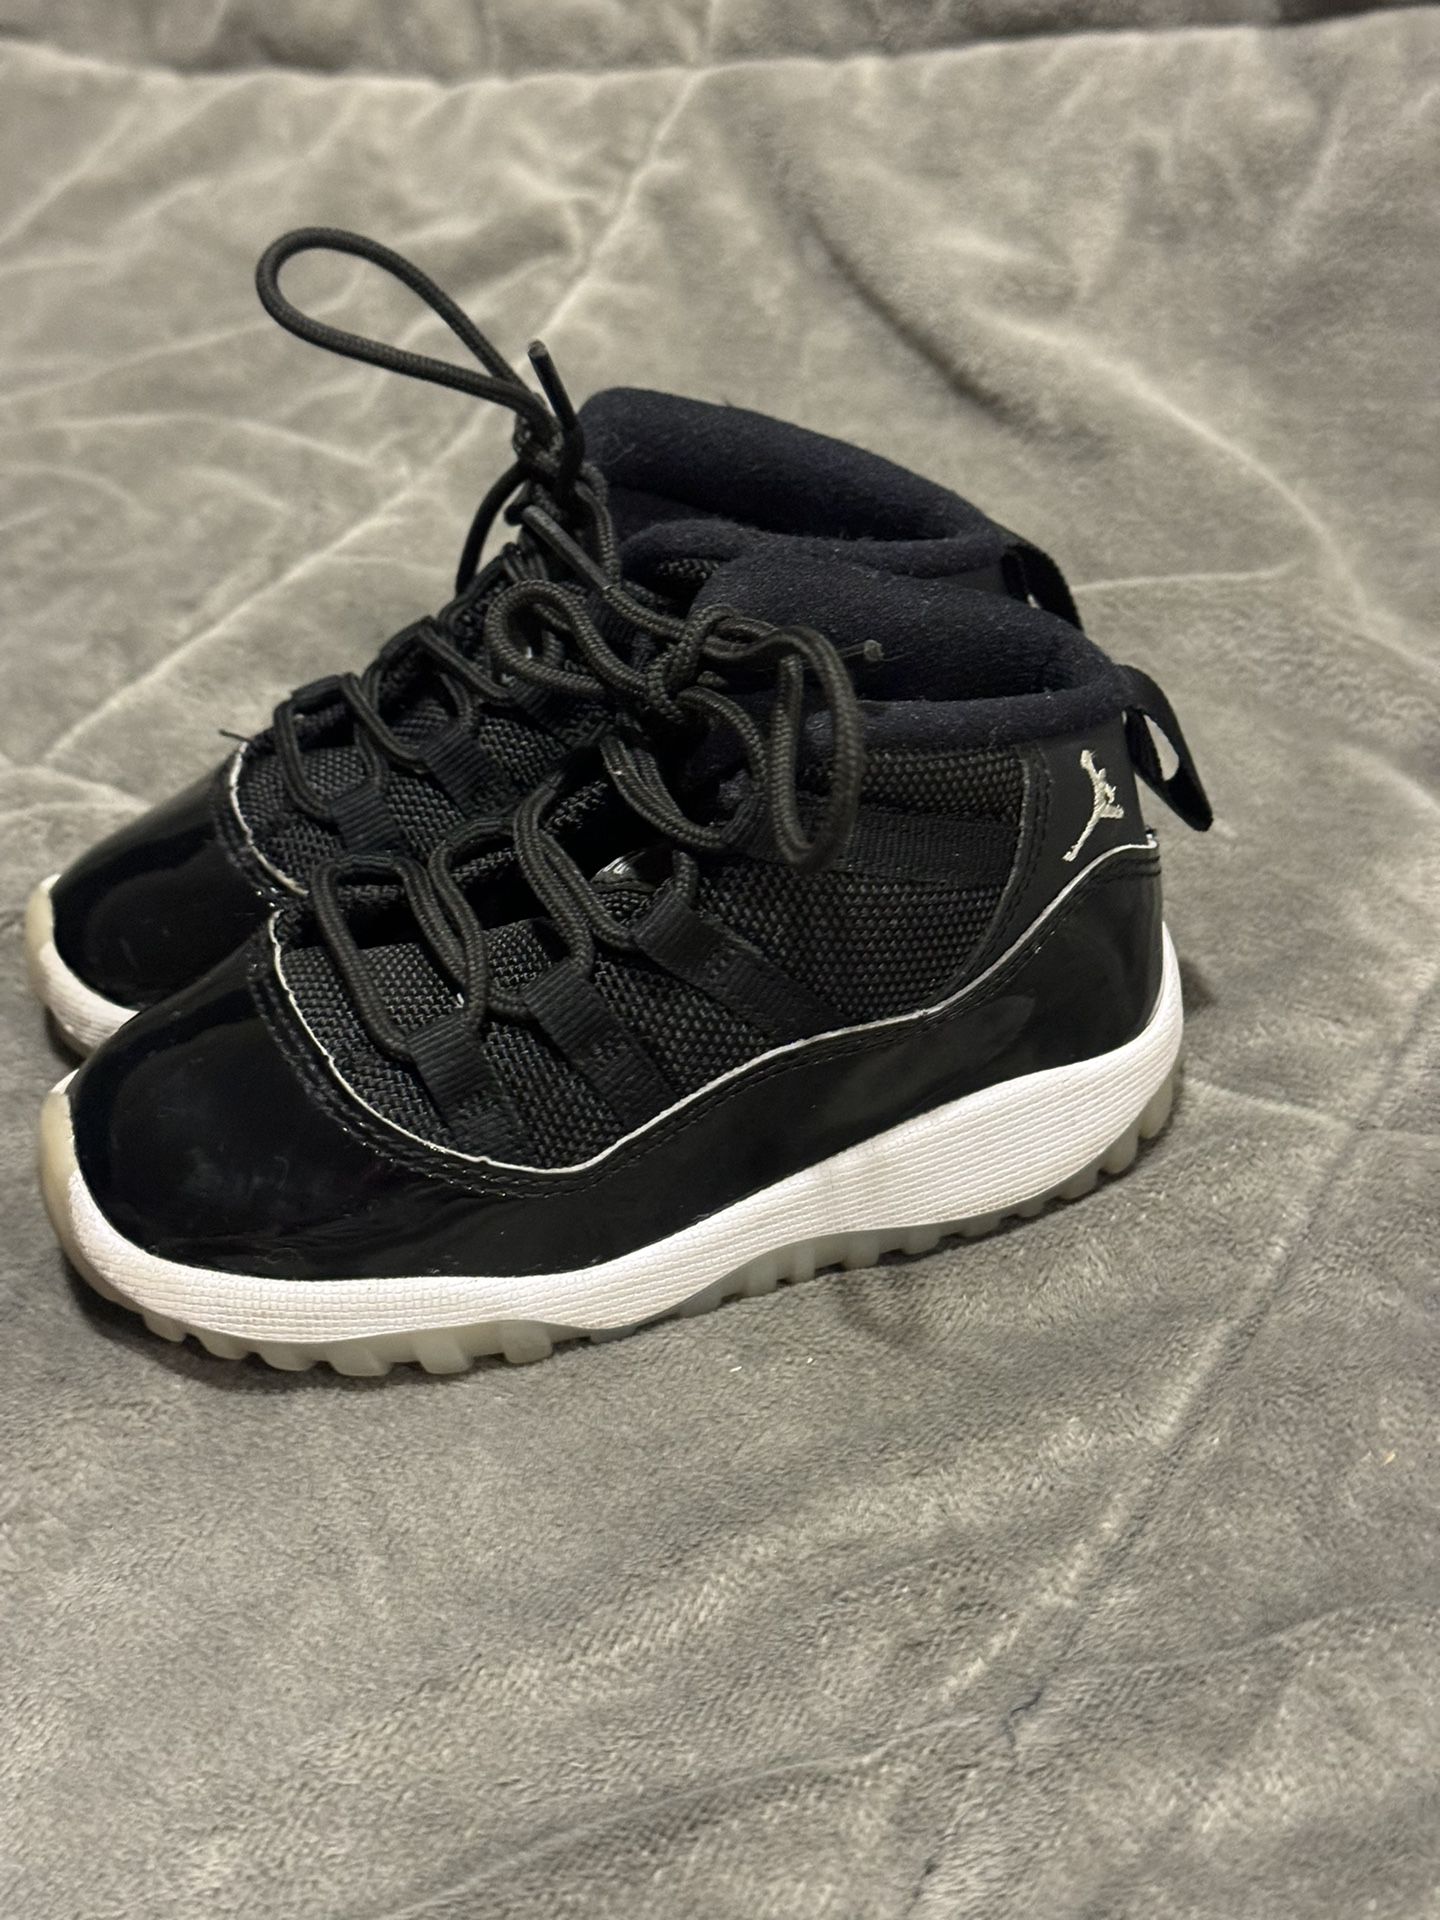 Black Jordans Size 8C